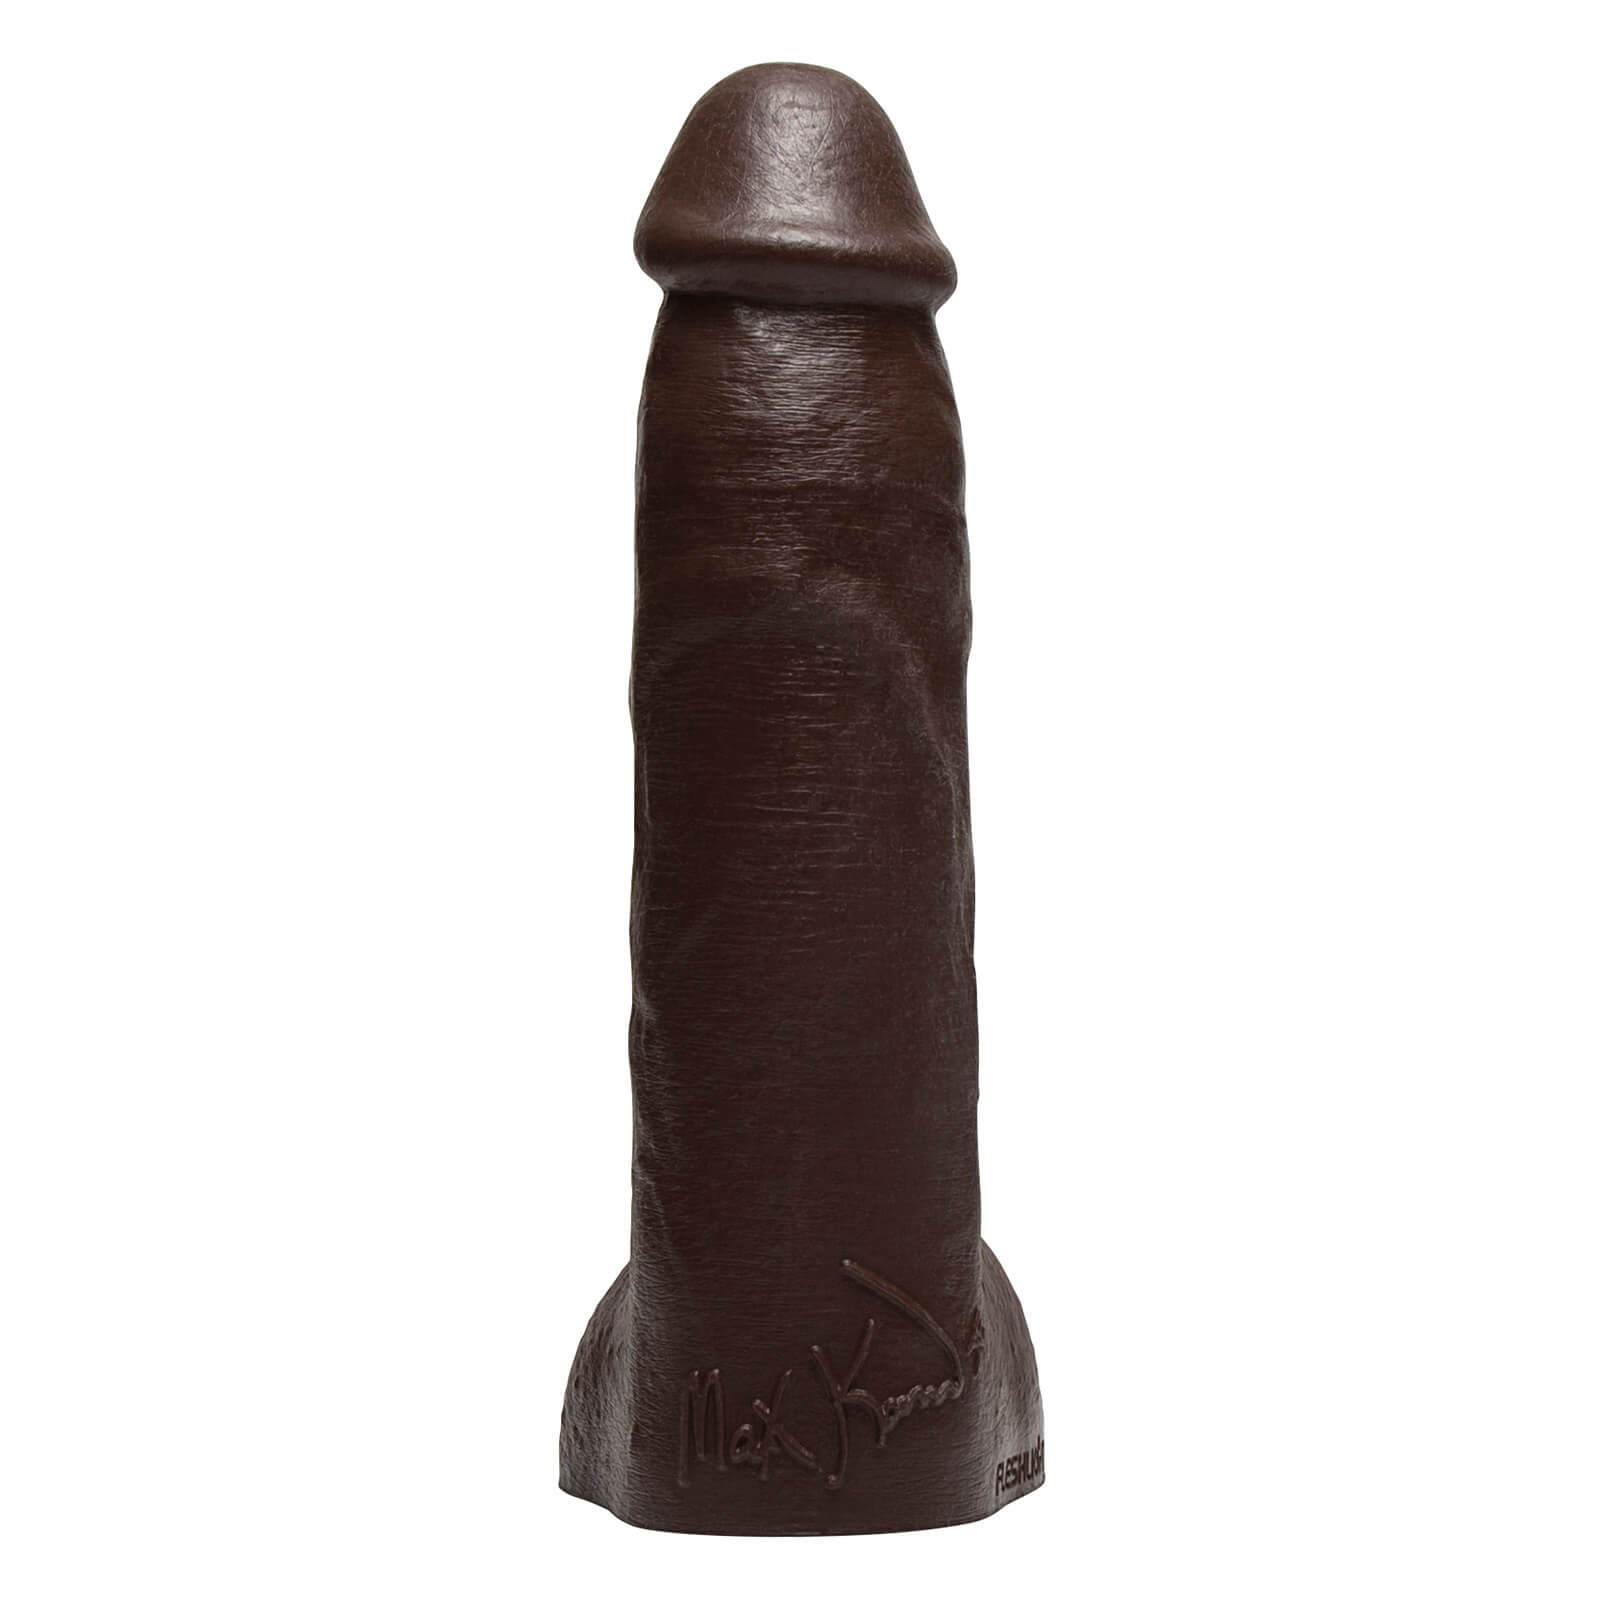 Fleshjack Boys Max Konnor Dildo (20,5 cm), originálna kópia penisu